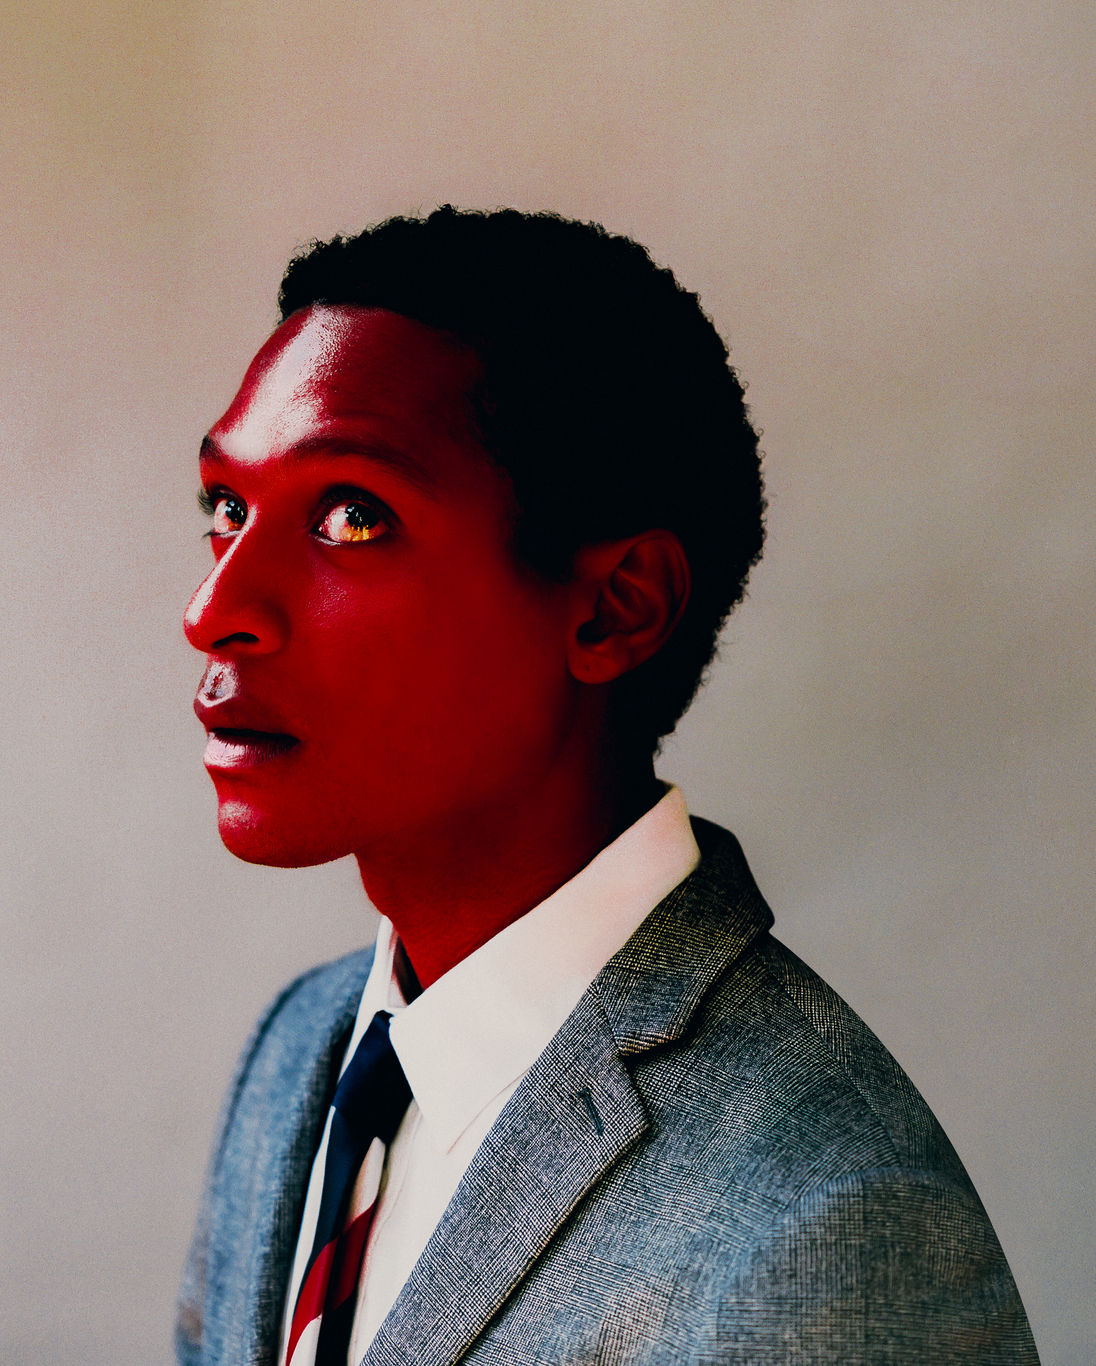 Diese Fotografie von Aaron Ricketts zeigt Kopf- und Schulterpartie eines jungen afrikanischen oder afroamerikanischen Mannes im Seitenprofil. Seine Haut ist glänzend-rot gefärbt. Gekleidet in Anzug und Krawatte, richtet er seinen Blick nach schräg oben.